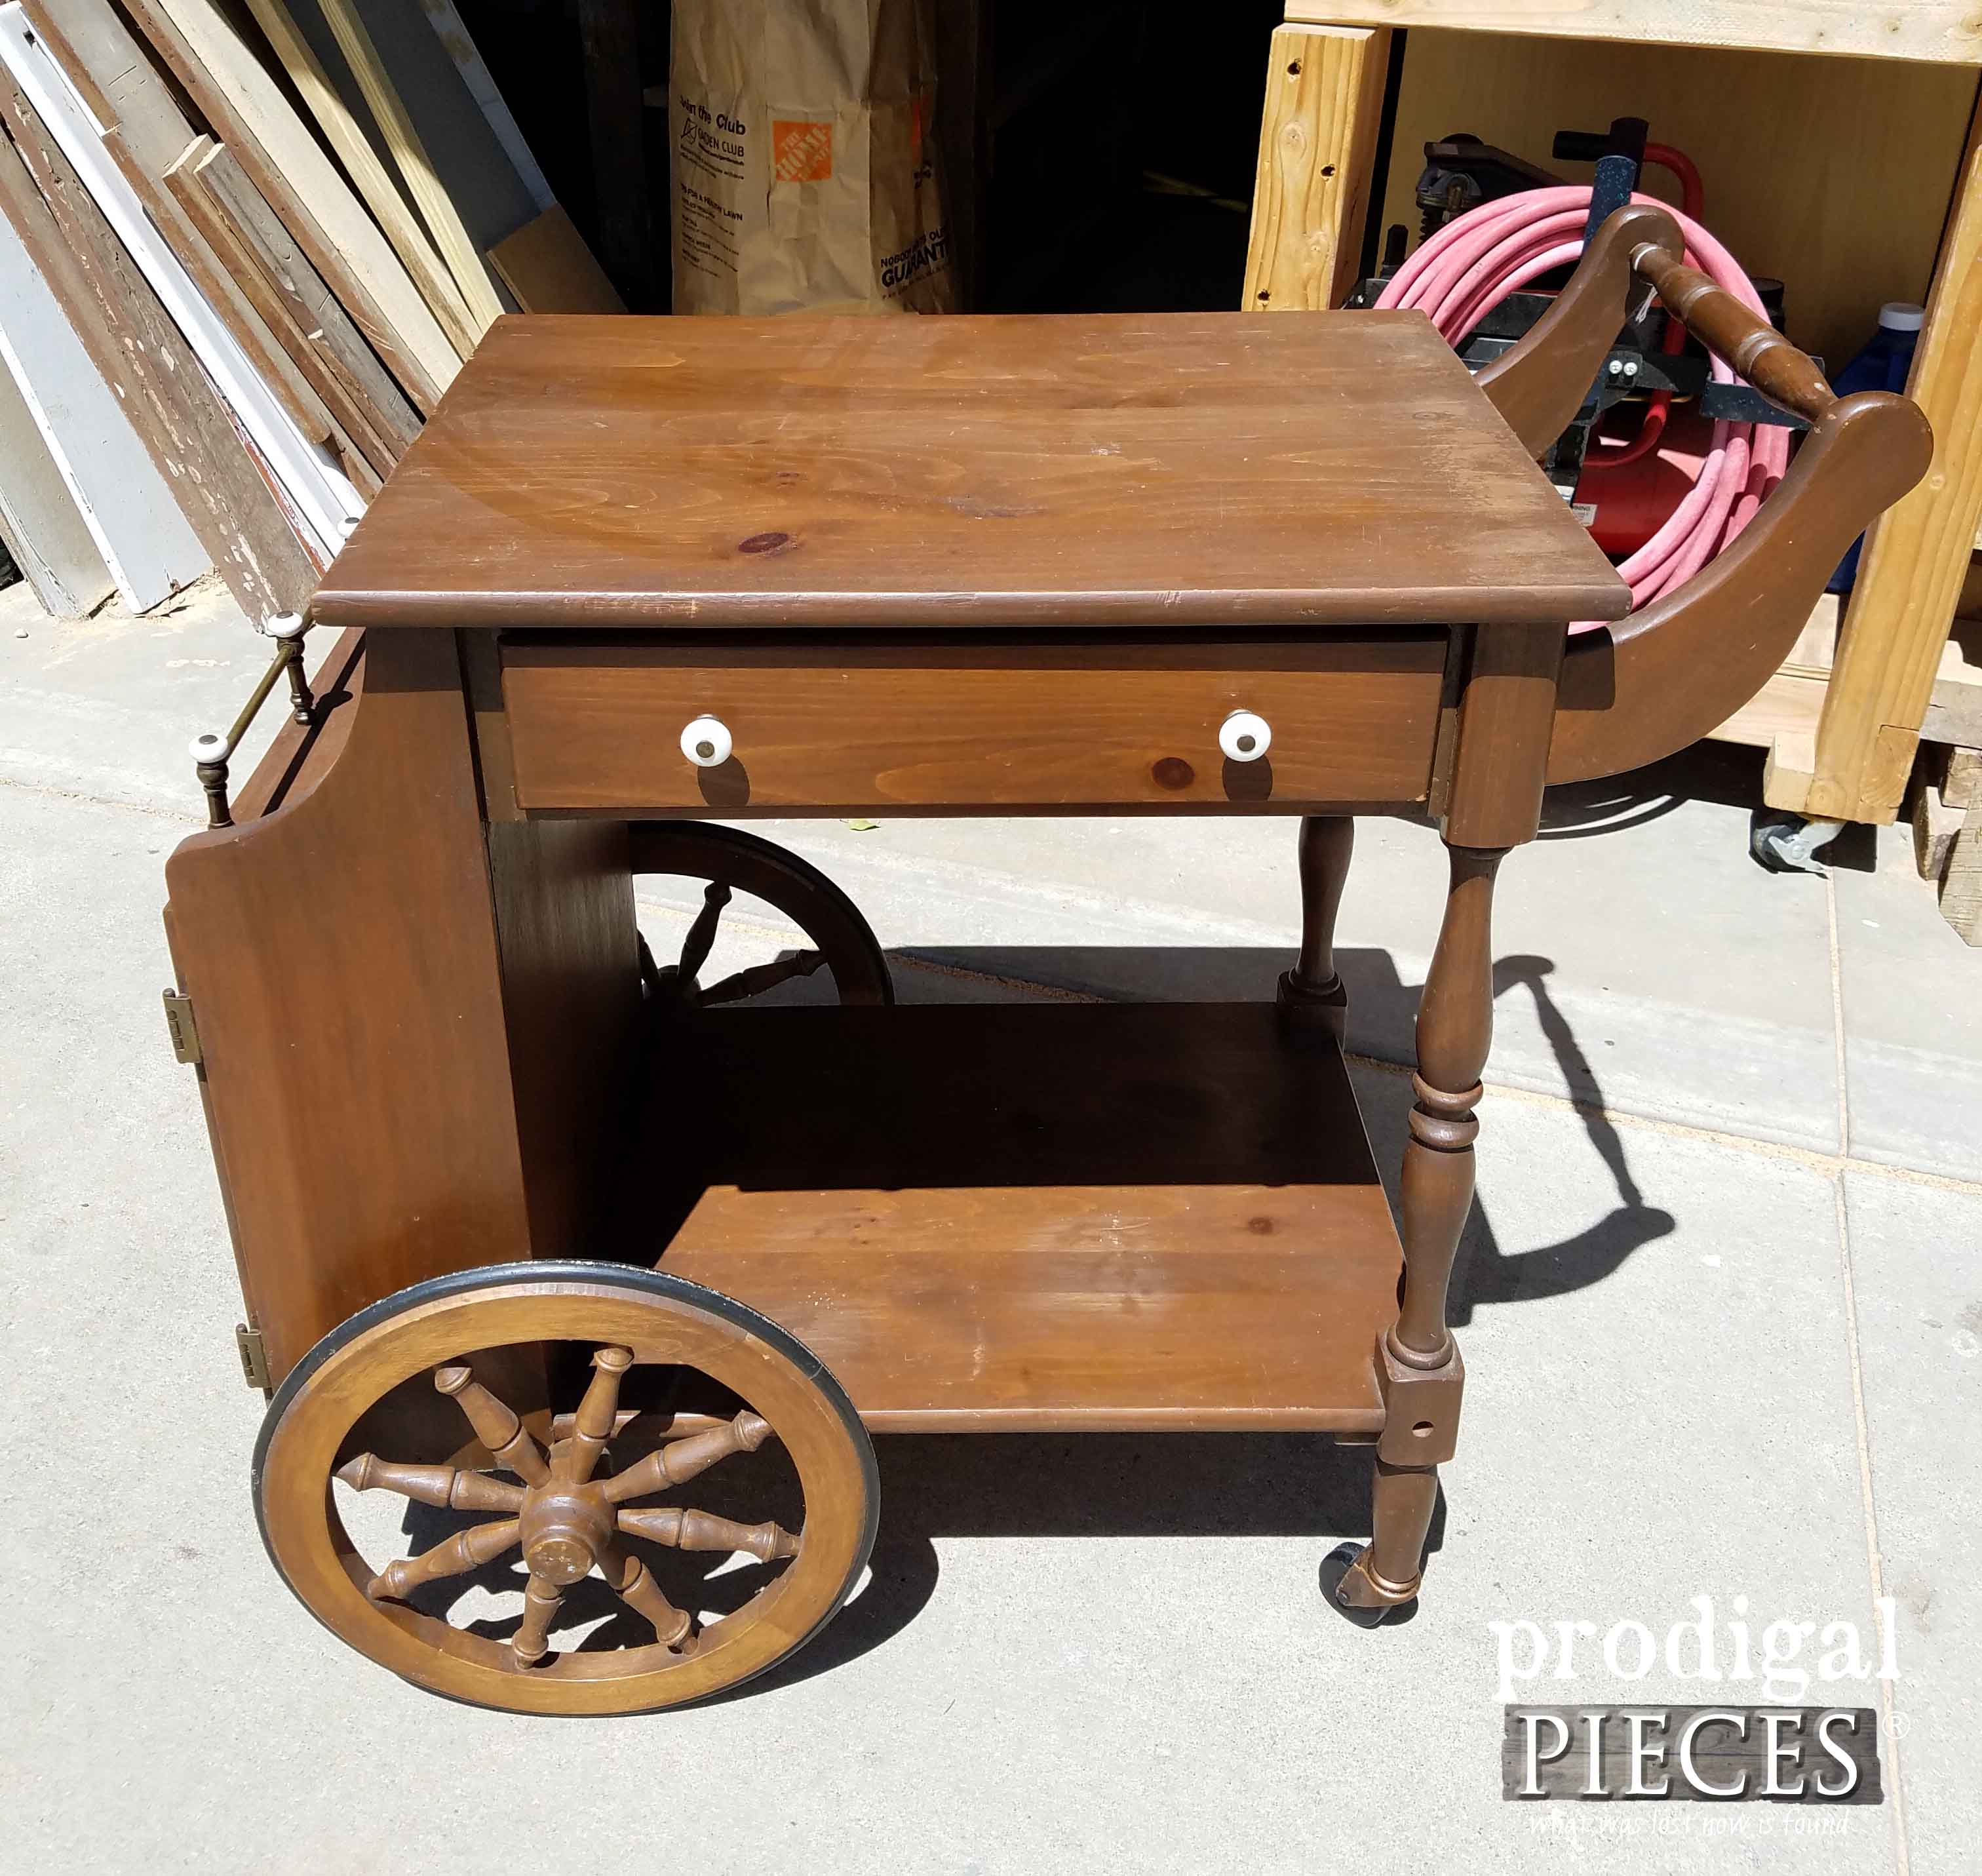 Extra Storage on Vintage Tea Cart | Prodigal Pieces | prodigalpieces.com